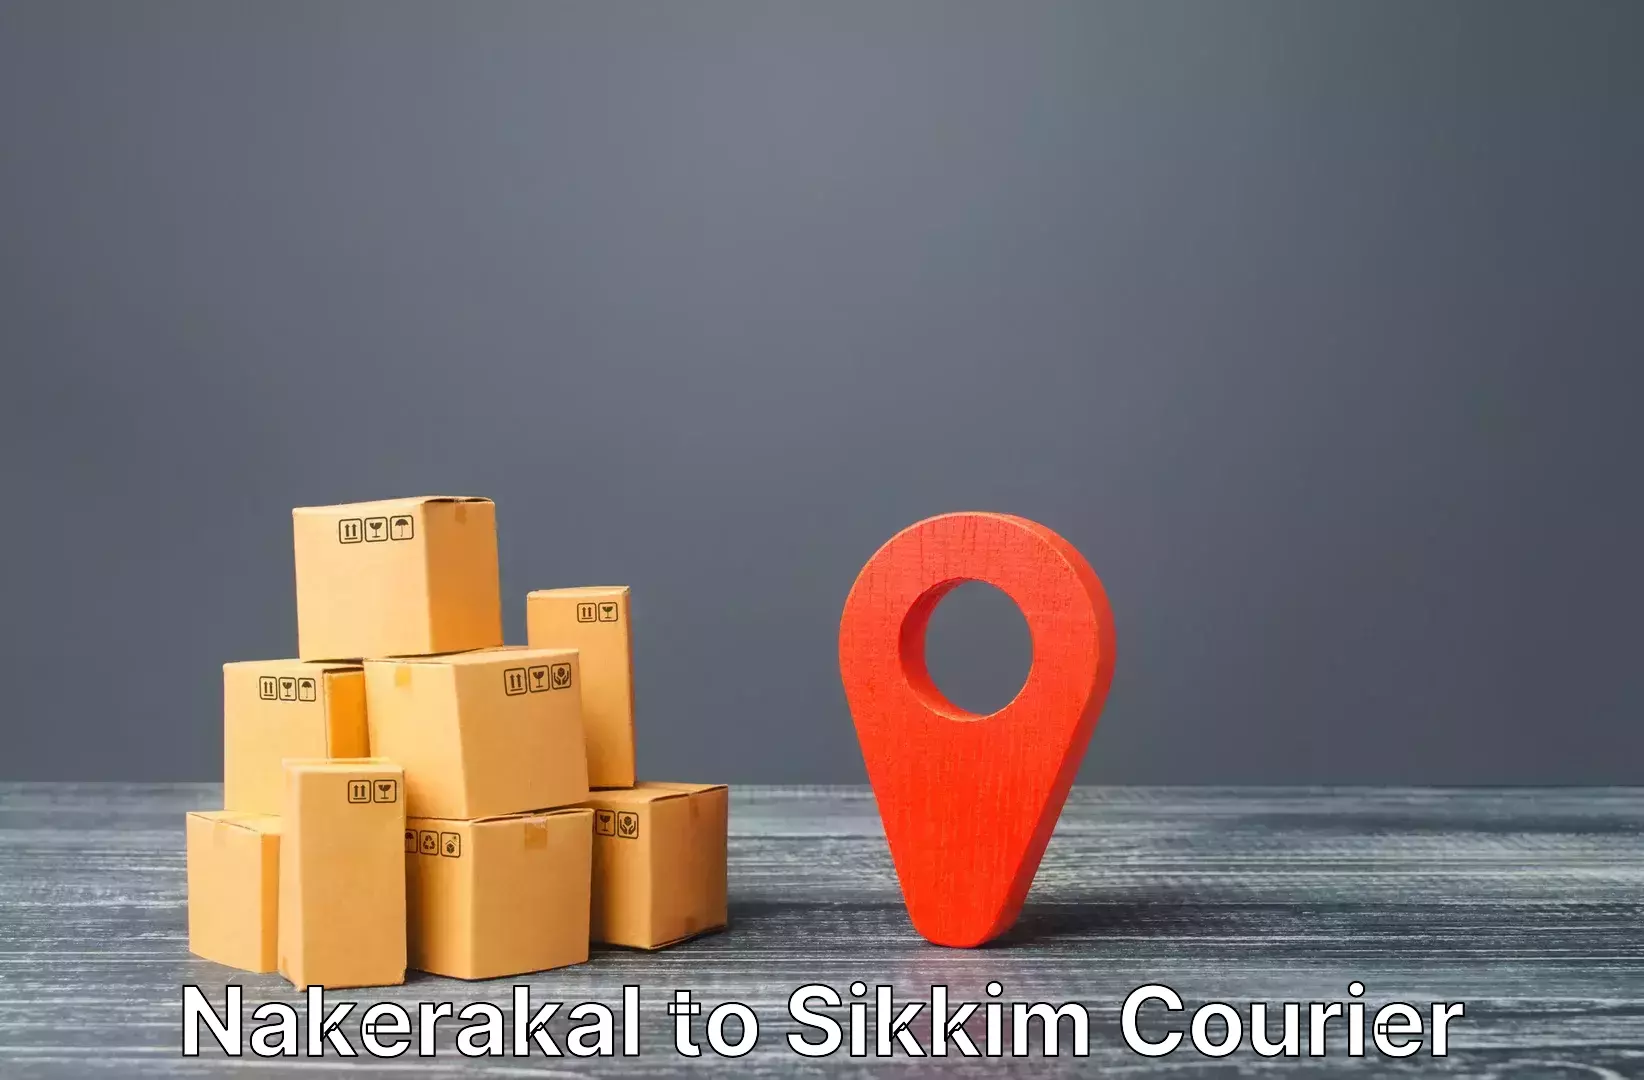 Luggage transport service Nakerakal to East Sikkim